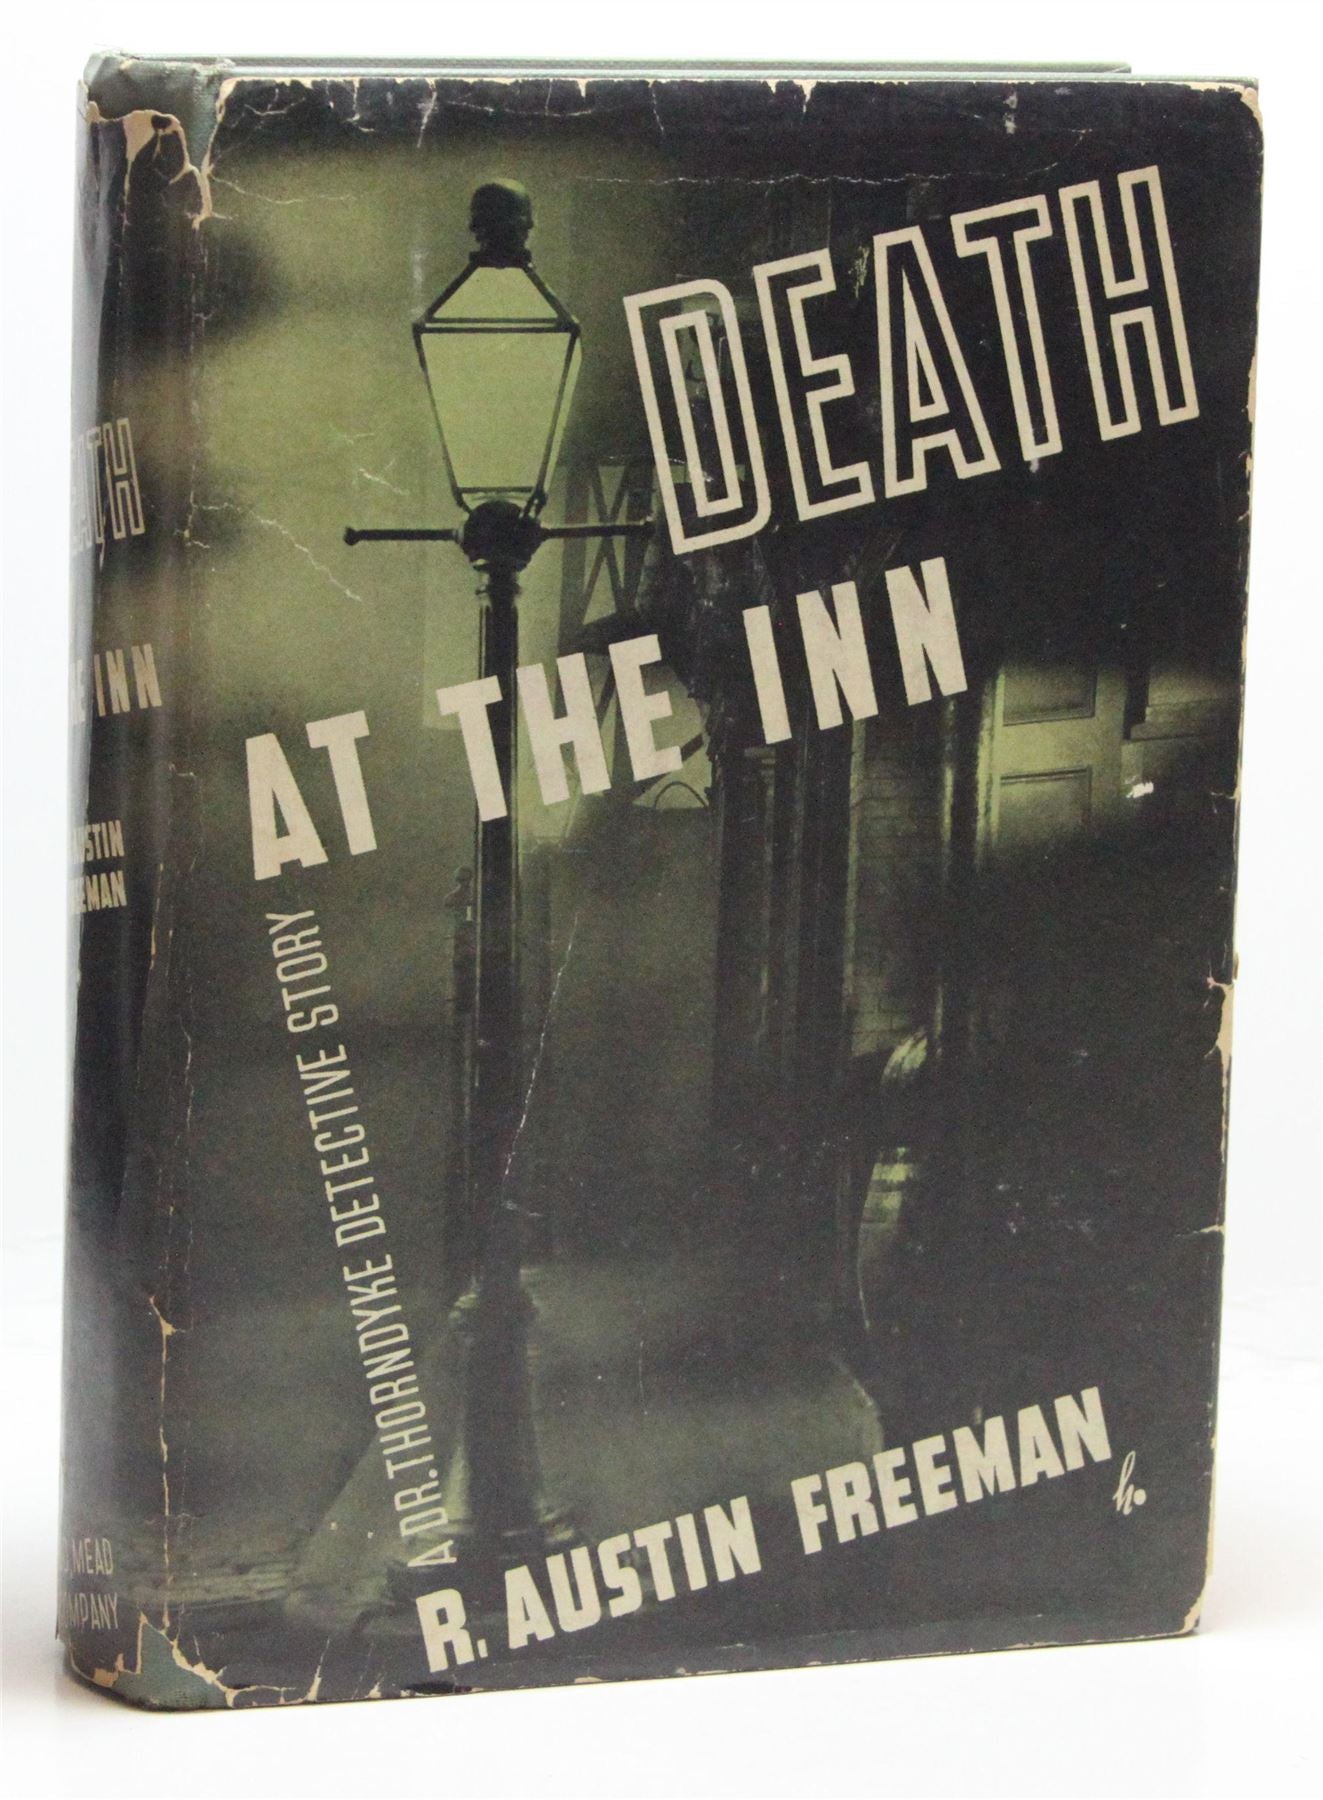 Death at the Inn (US Edition)